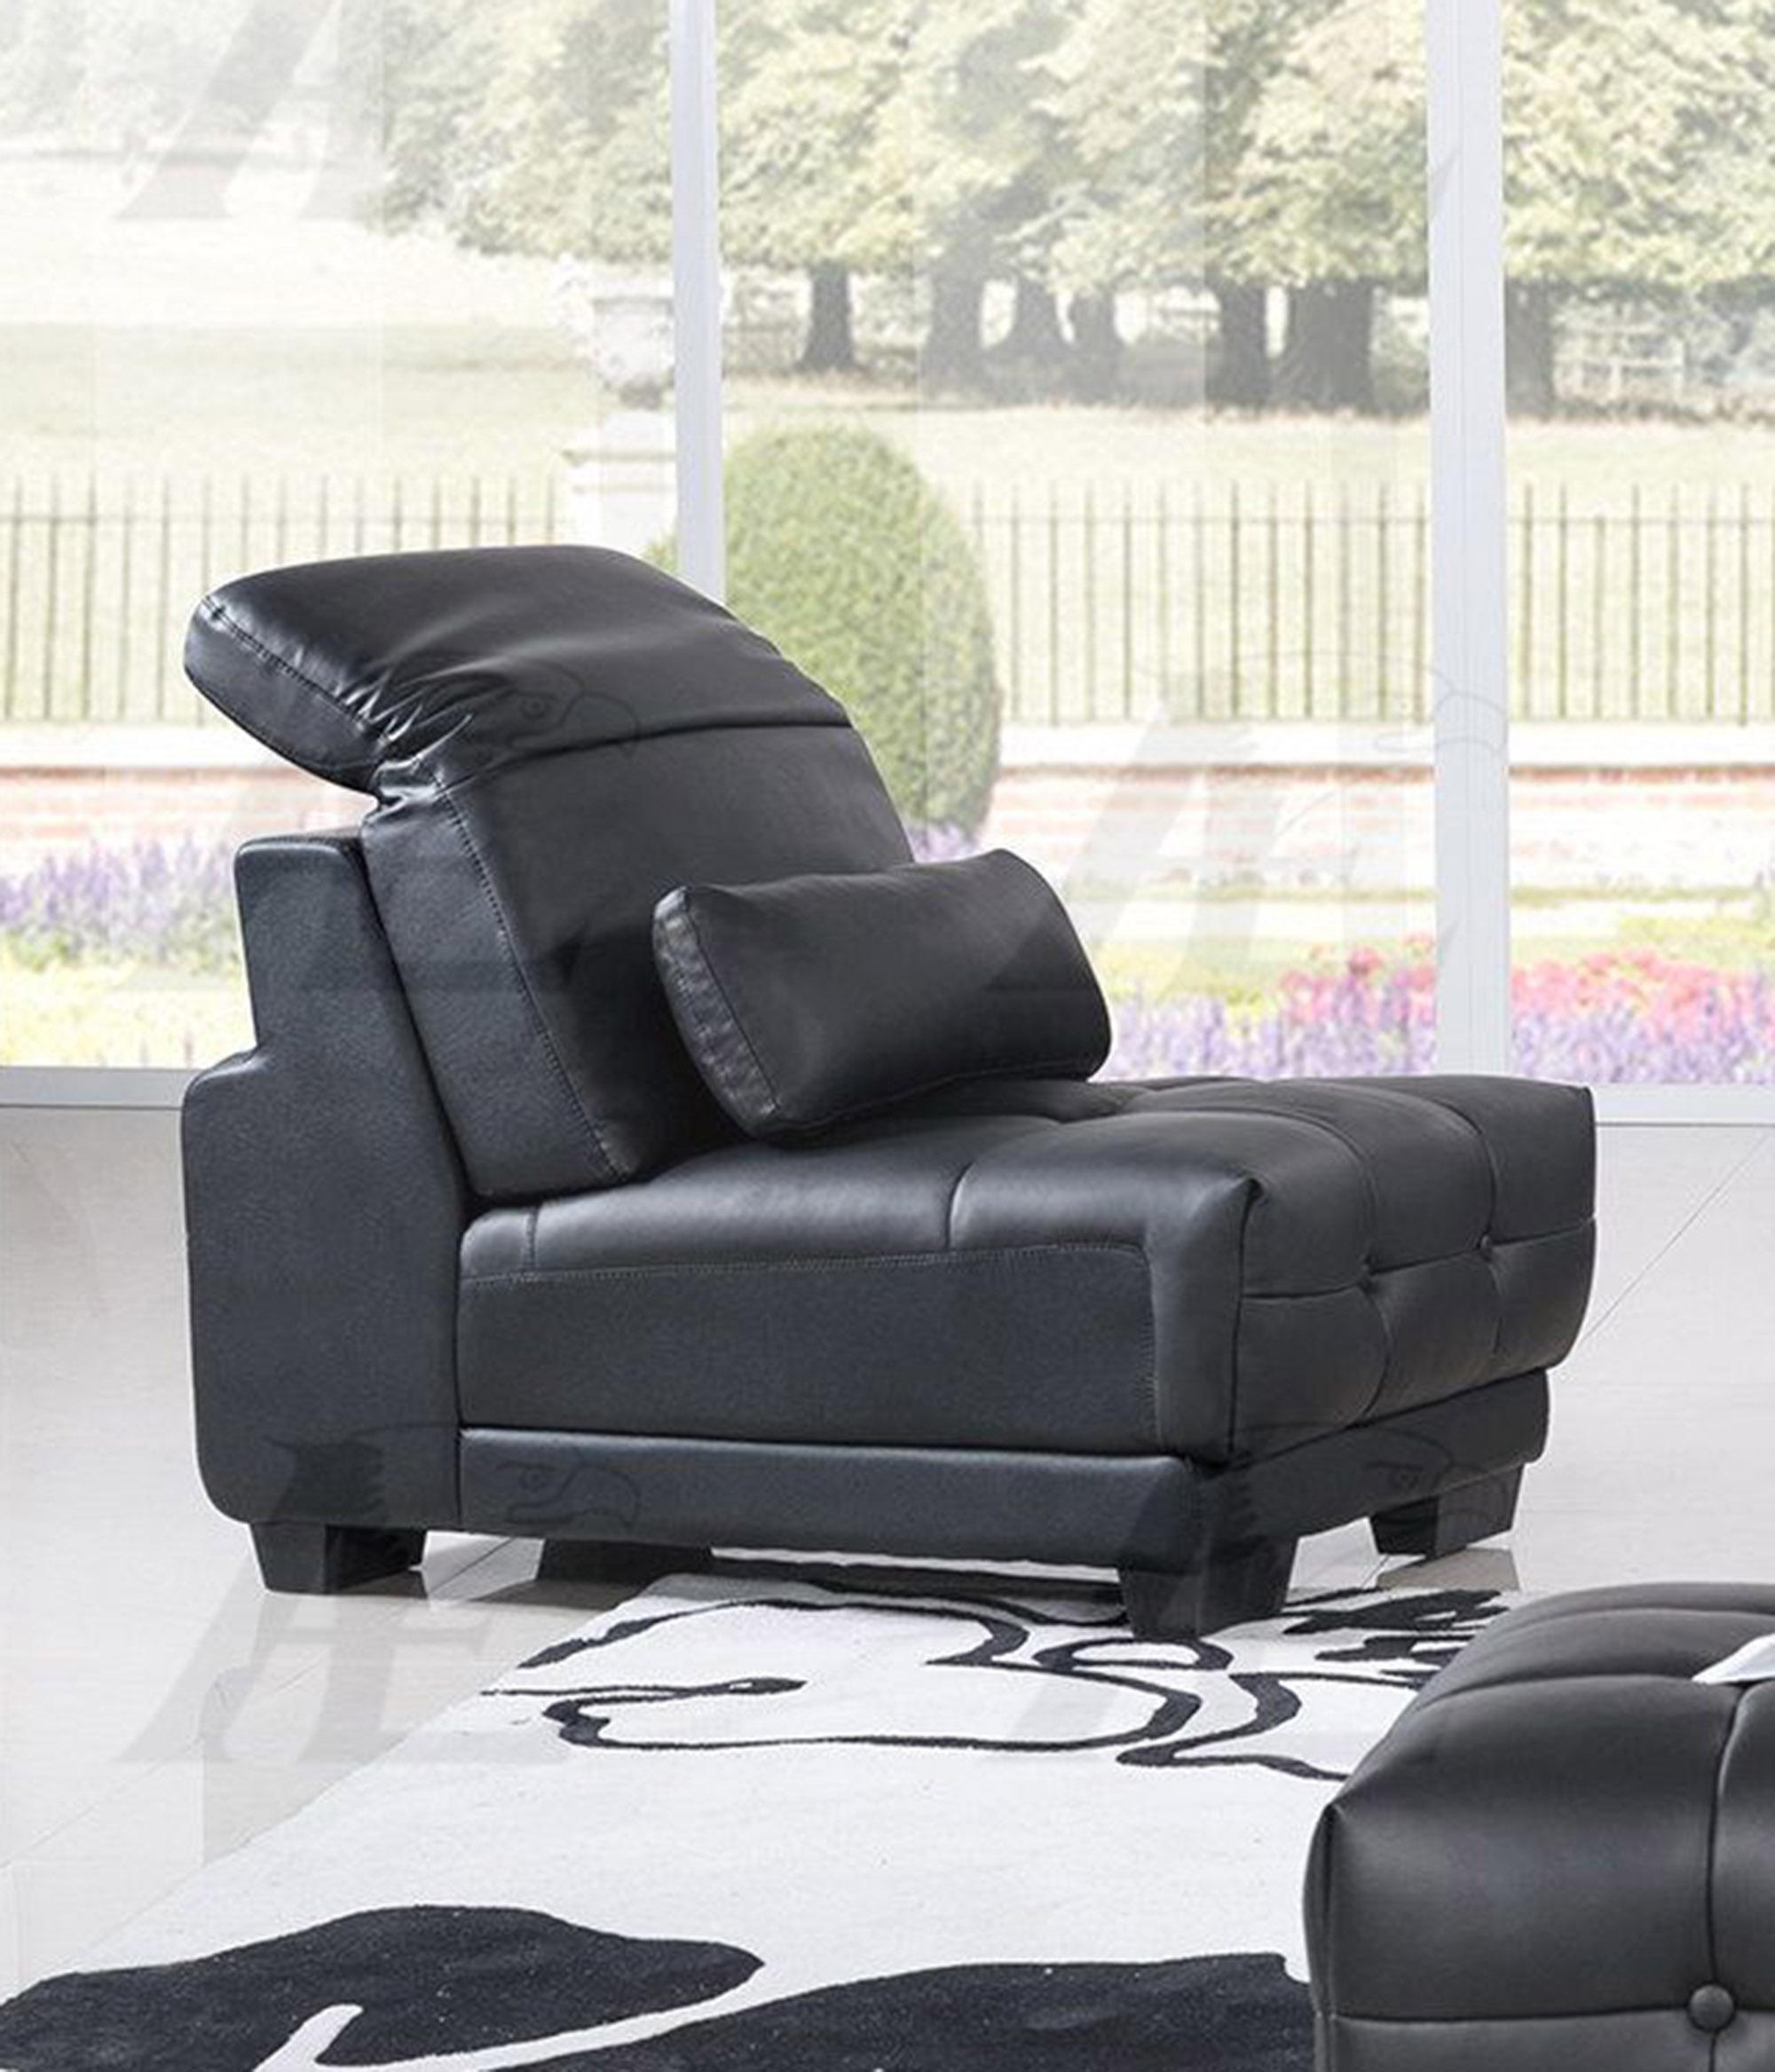 

    
AE-L296-BK Set-4 RHC American Eagle Furniture Sofa Chaise Chair and Ottoman Set
